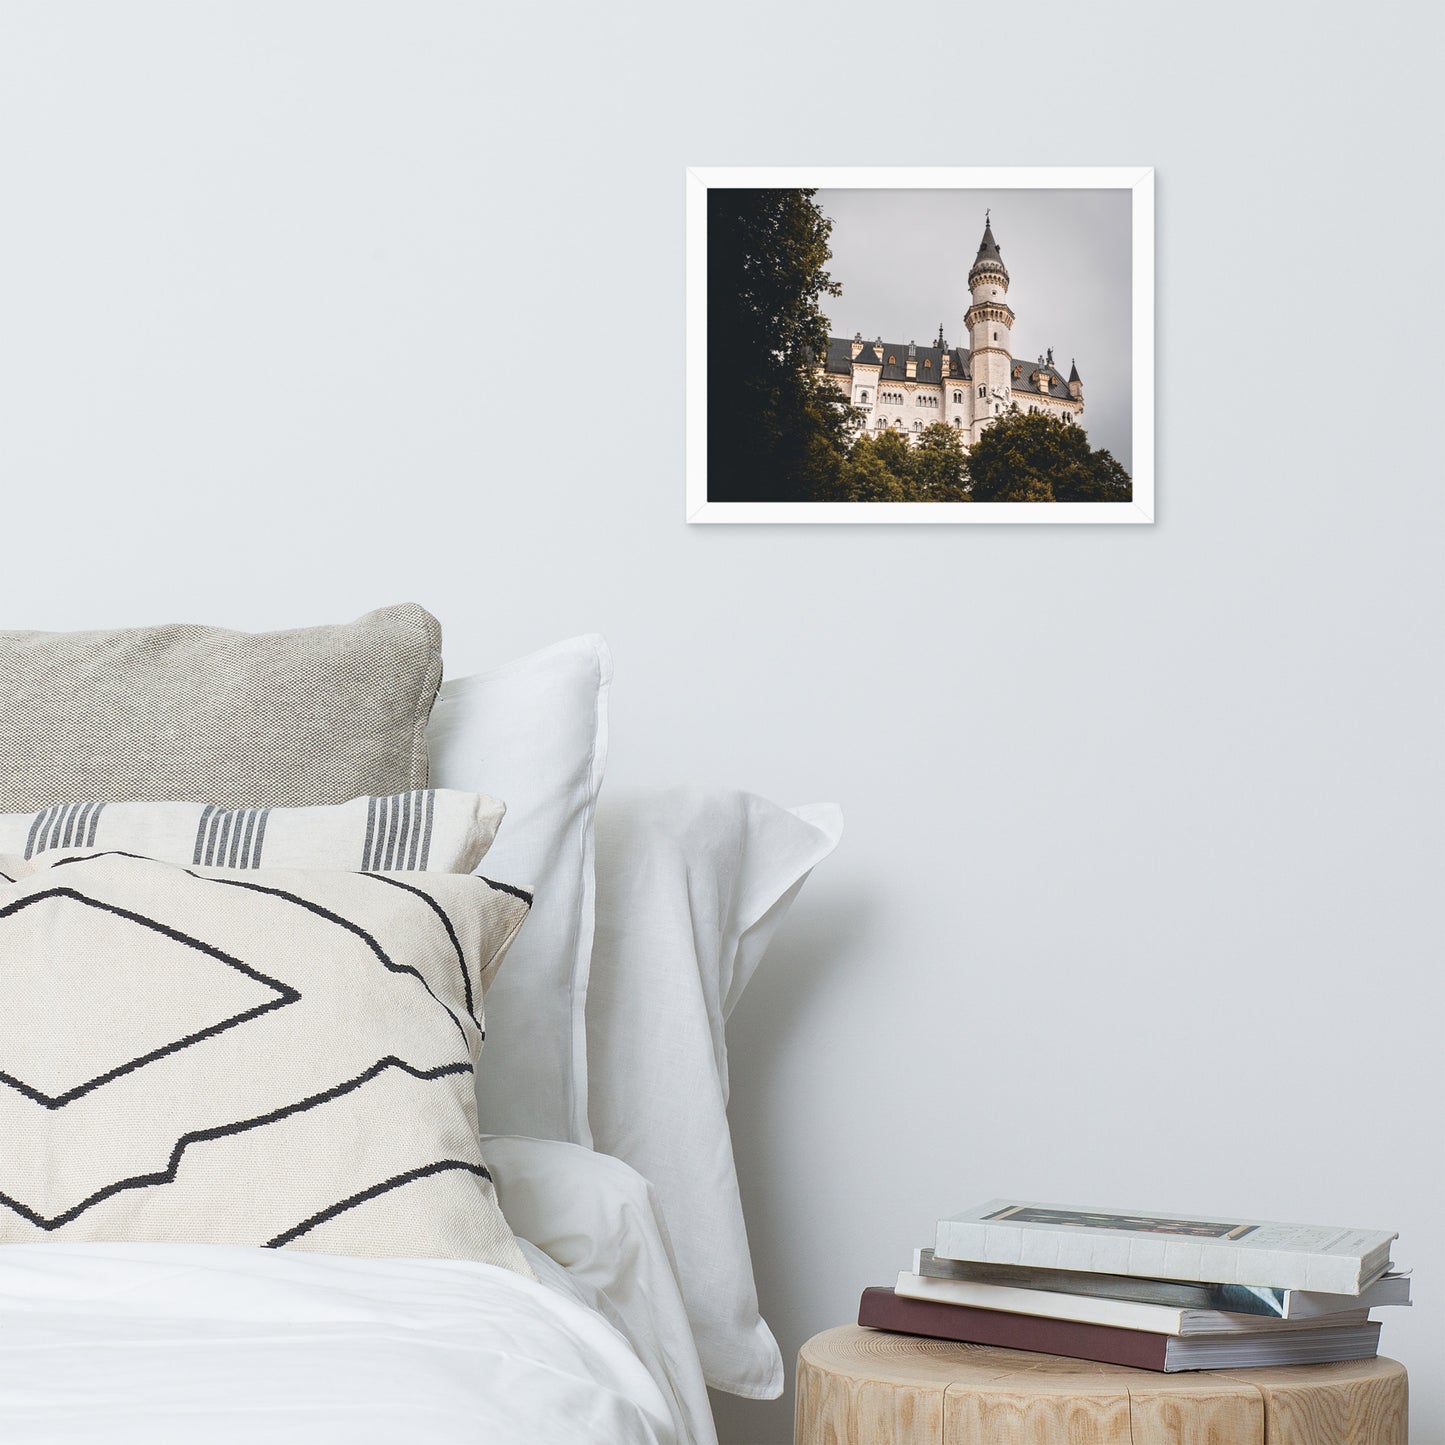 Bild Schloss Neuschwanstein mit Rahmen versehen